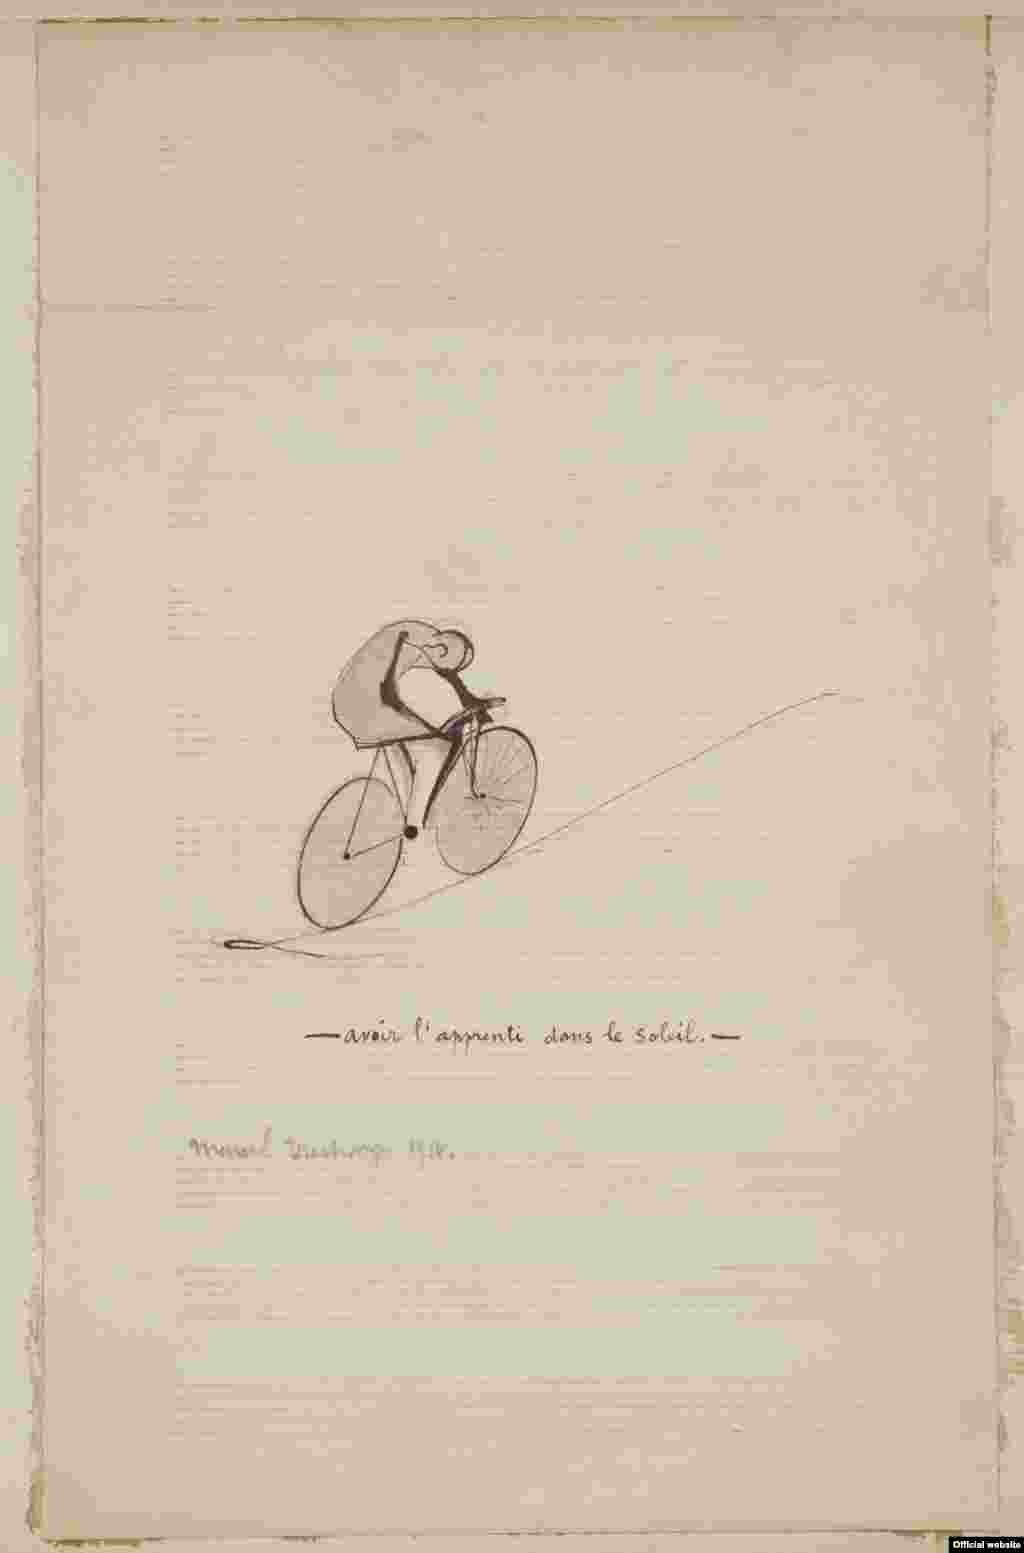 Marcel Duchamp, Avoir l&rsquo;apprenti dans le soleil, 1914